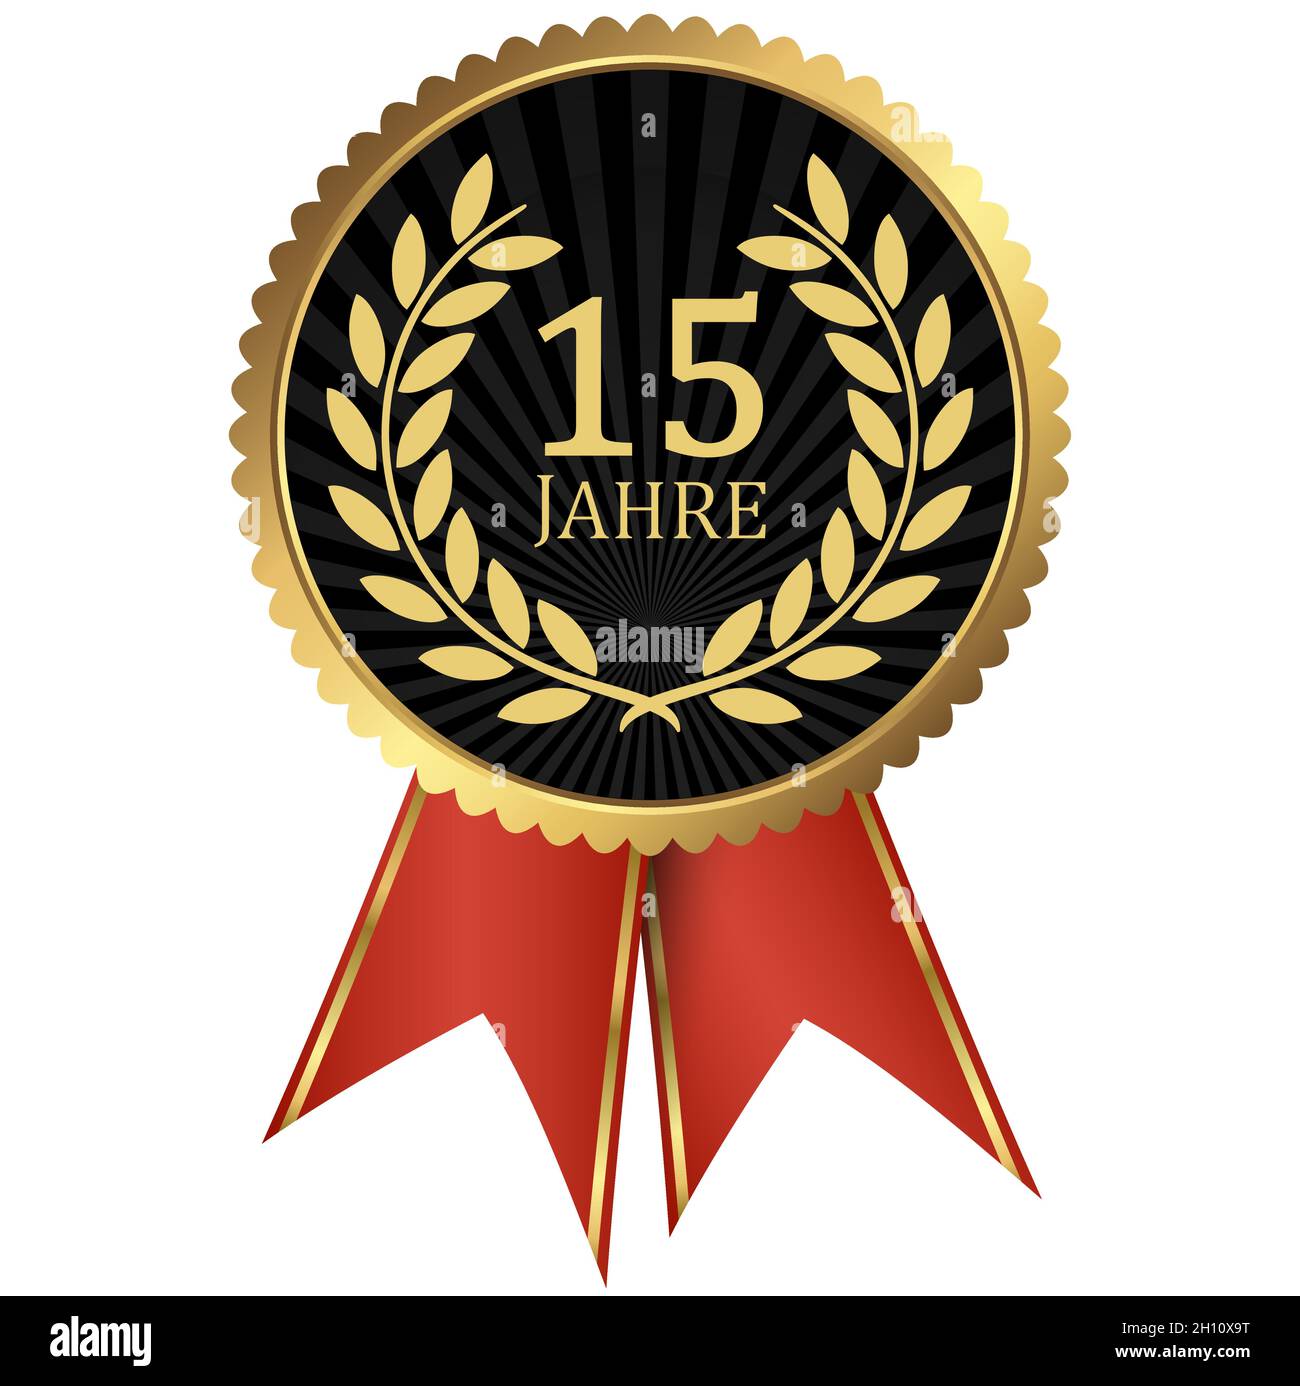 fichier vectoriel eps avec médaillon d'or avec couronne de laurier pour le succès ou jubilé ferme et texte 15 ans (texte allemand) Illustration de Vecteur